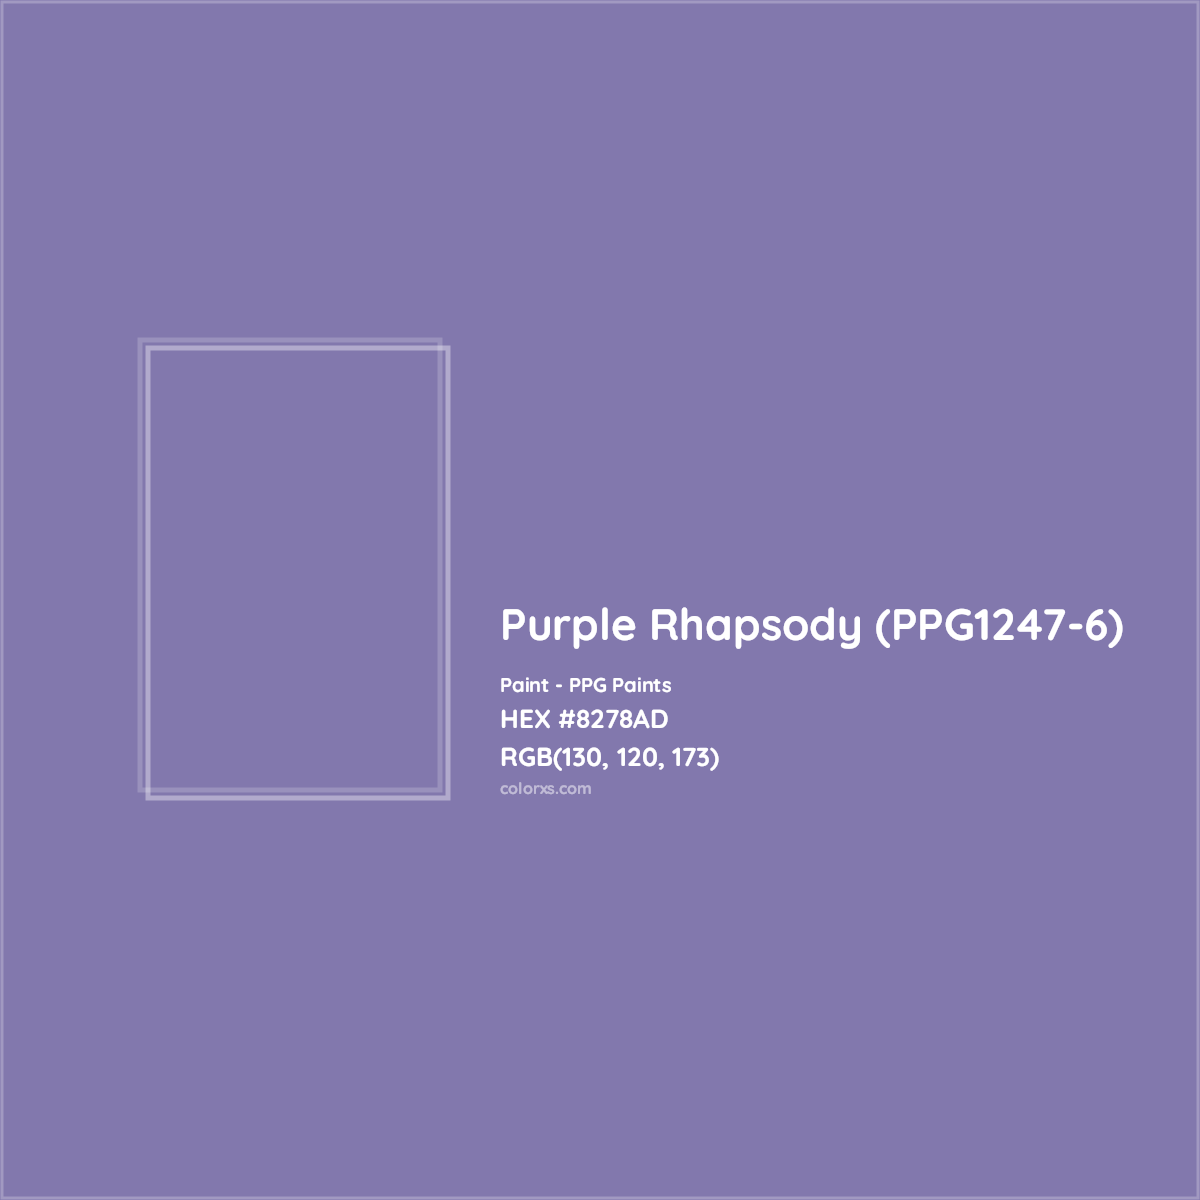 HEX #8278AD Purple Rhapsody (PPG1247-6) Paint PPG Paints - Color Code